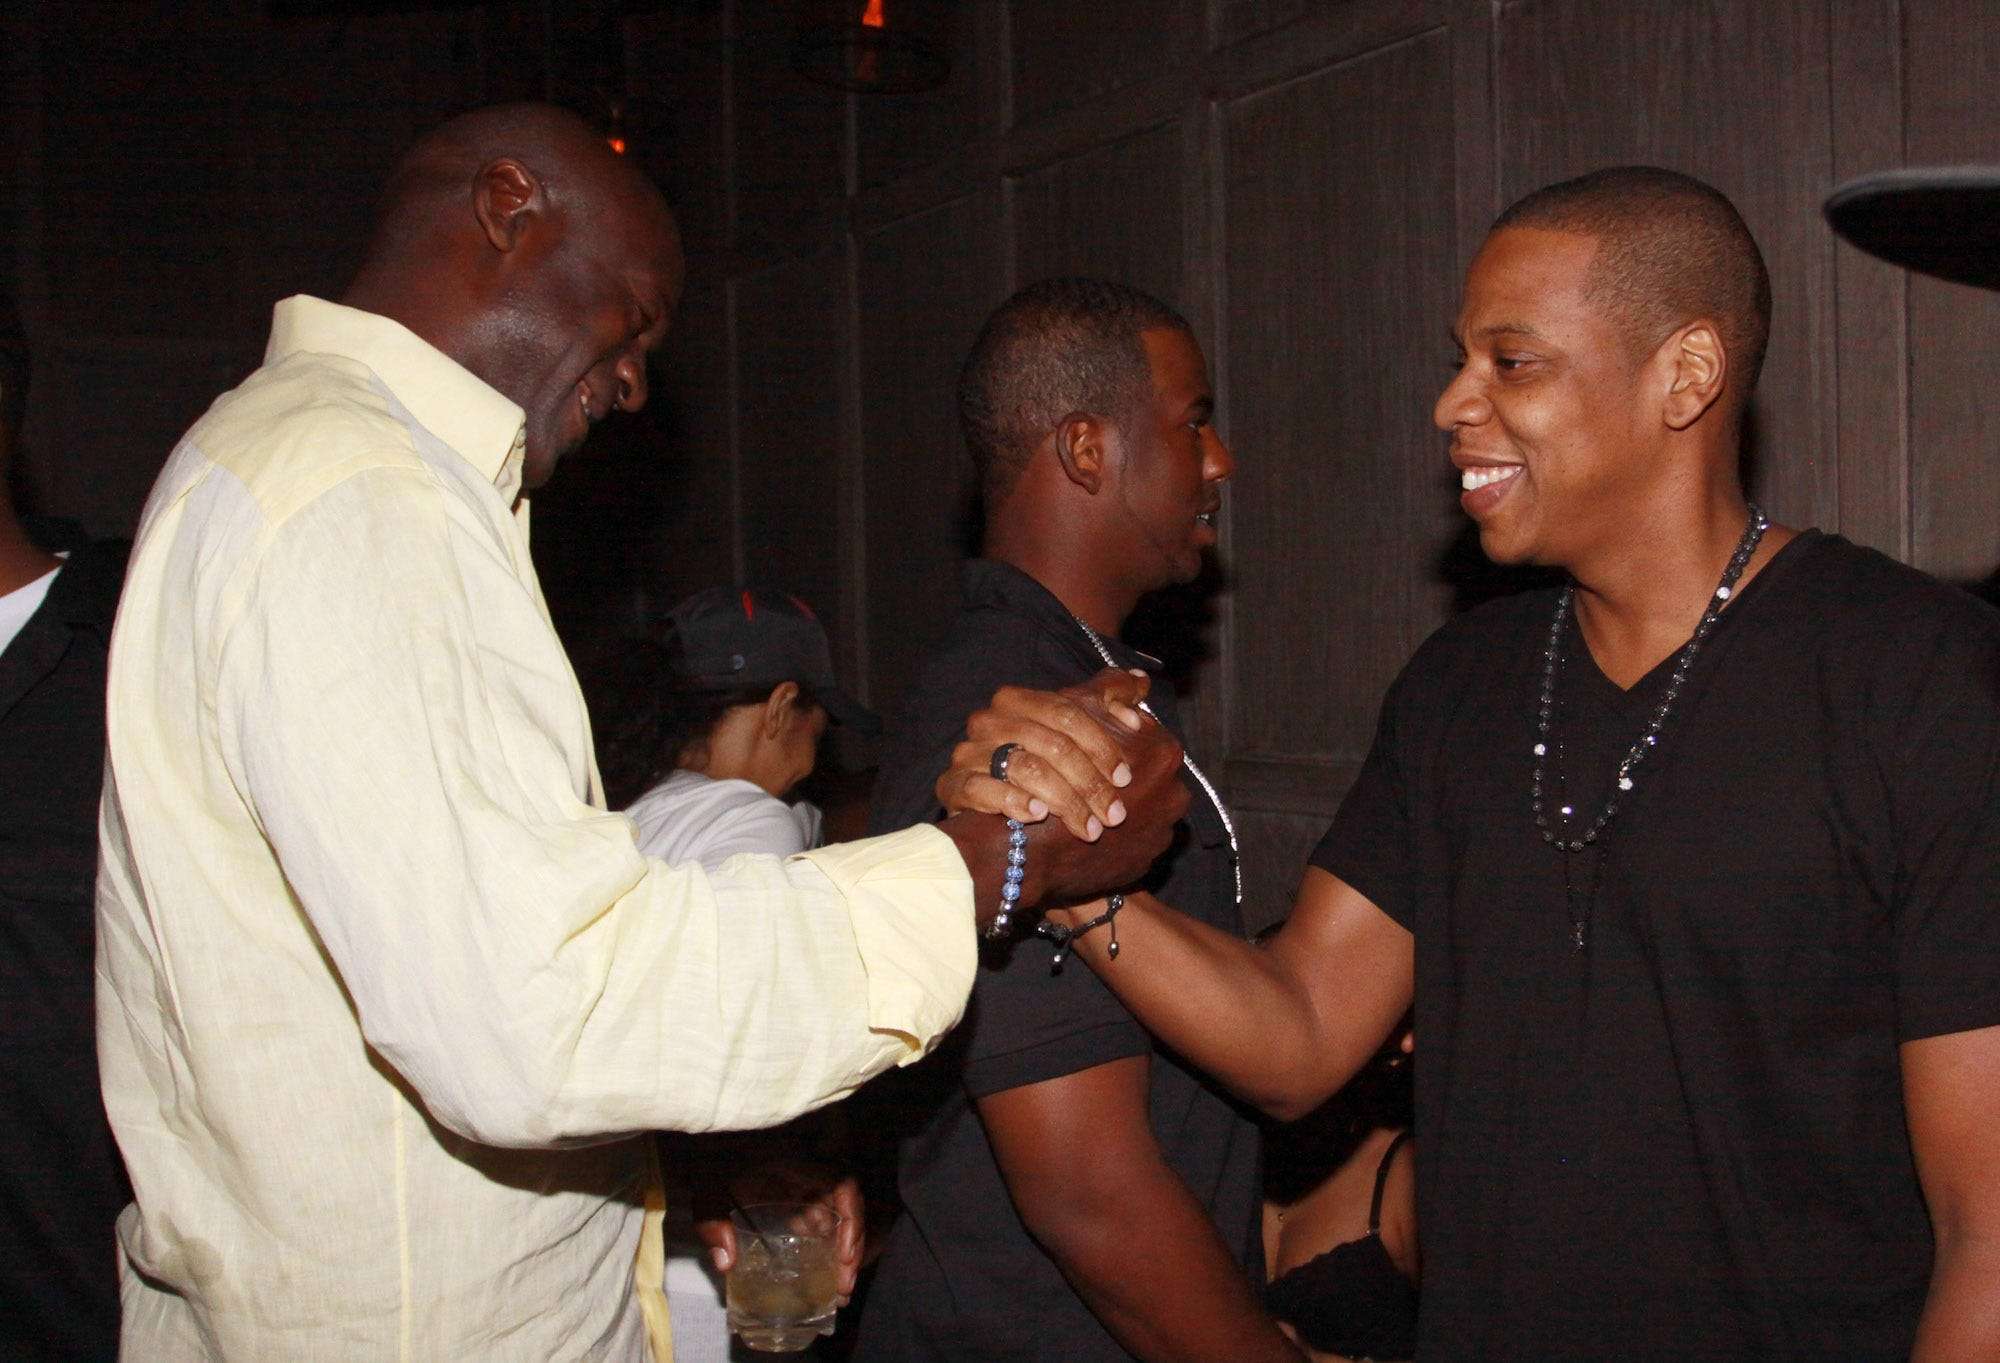 Michael-Jordan-once-took-a-teammate-to-meet-Jay-Z-after-he-told-him-he-was-a-huge-fan-of-the-rap-mogul.jpg